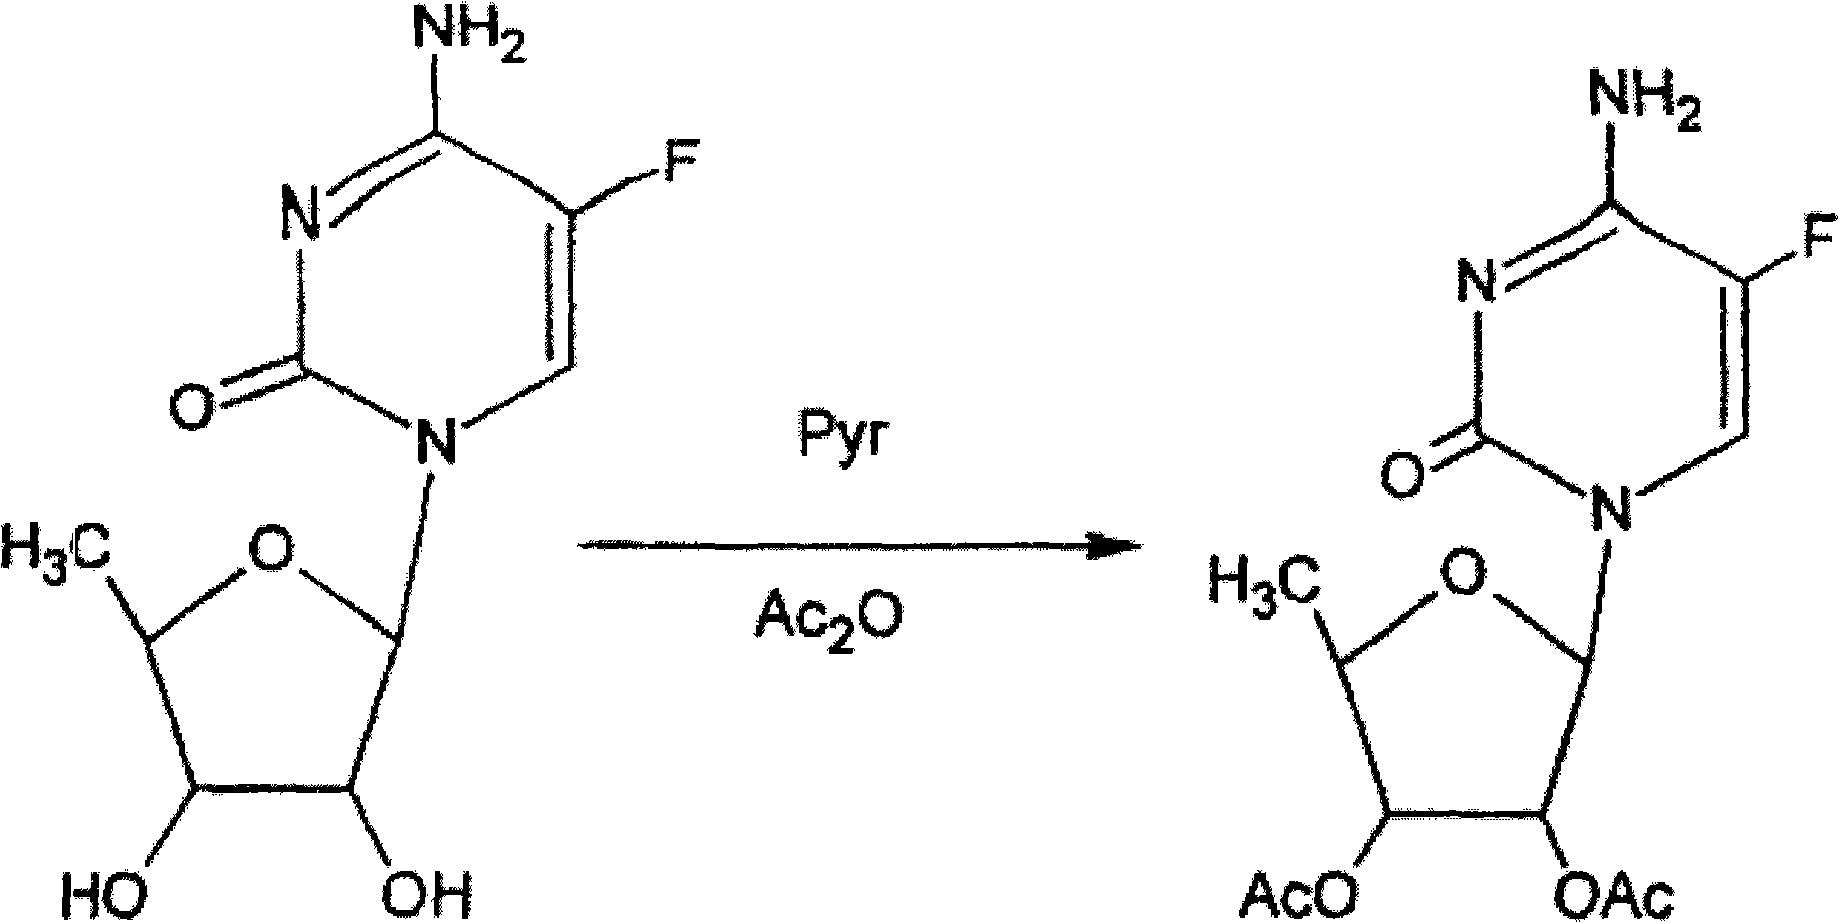 Preparation method of 2',3'-di-O-acetyl-5'-deoxy-5-fluorocytidine